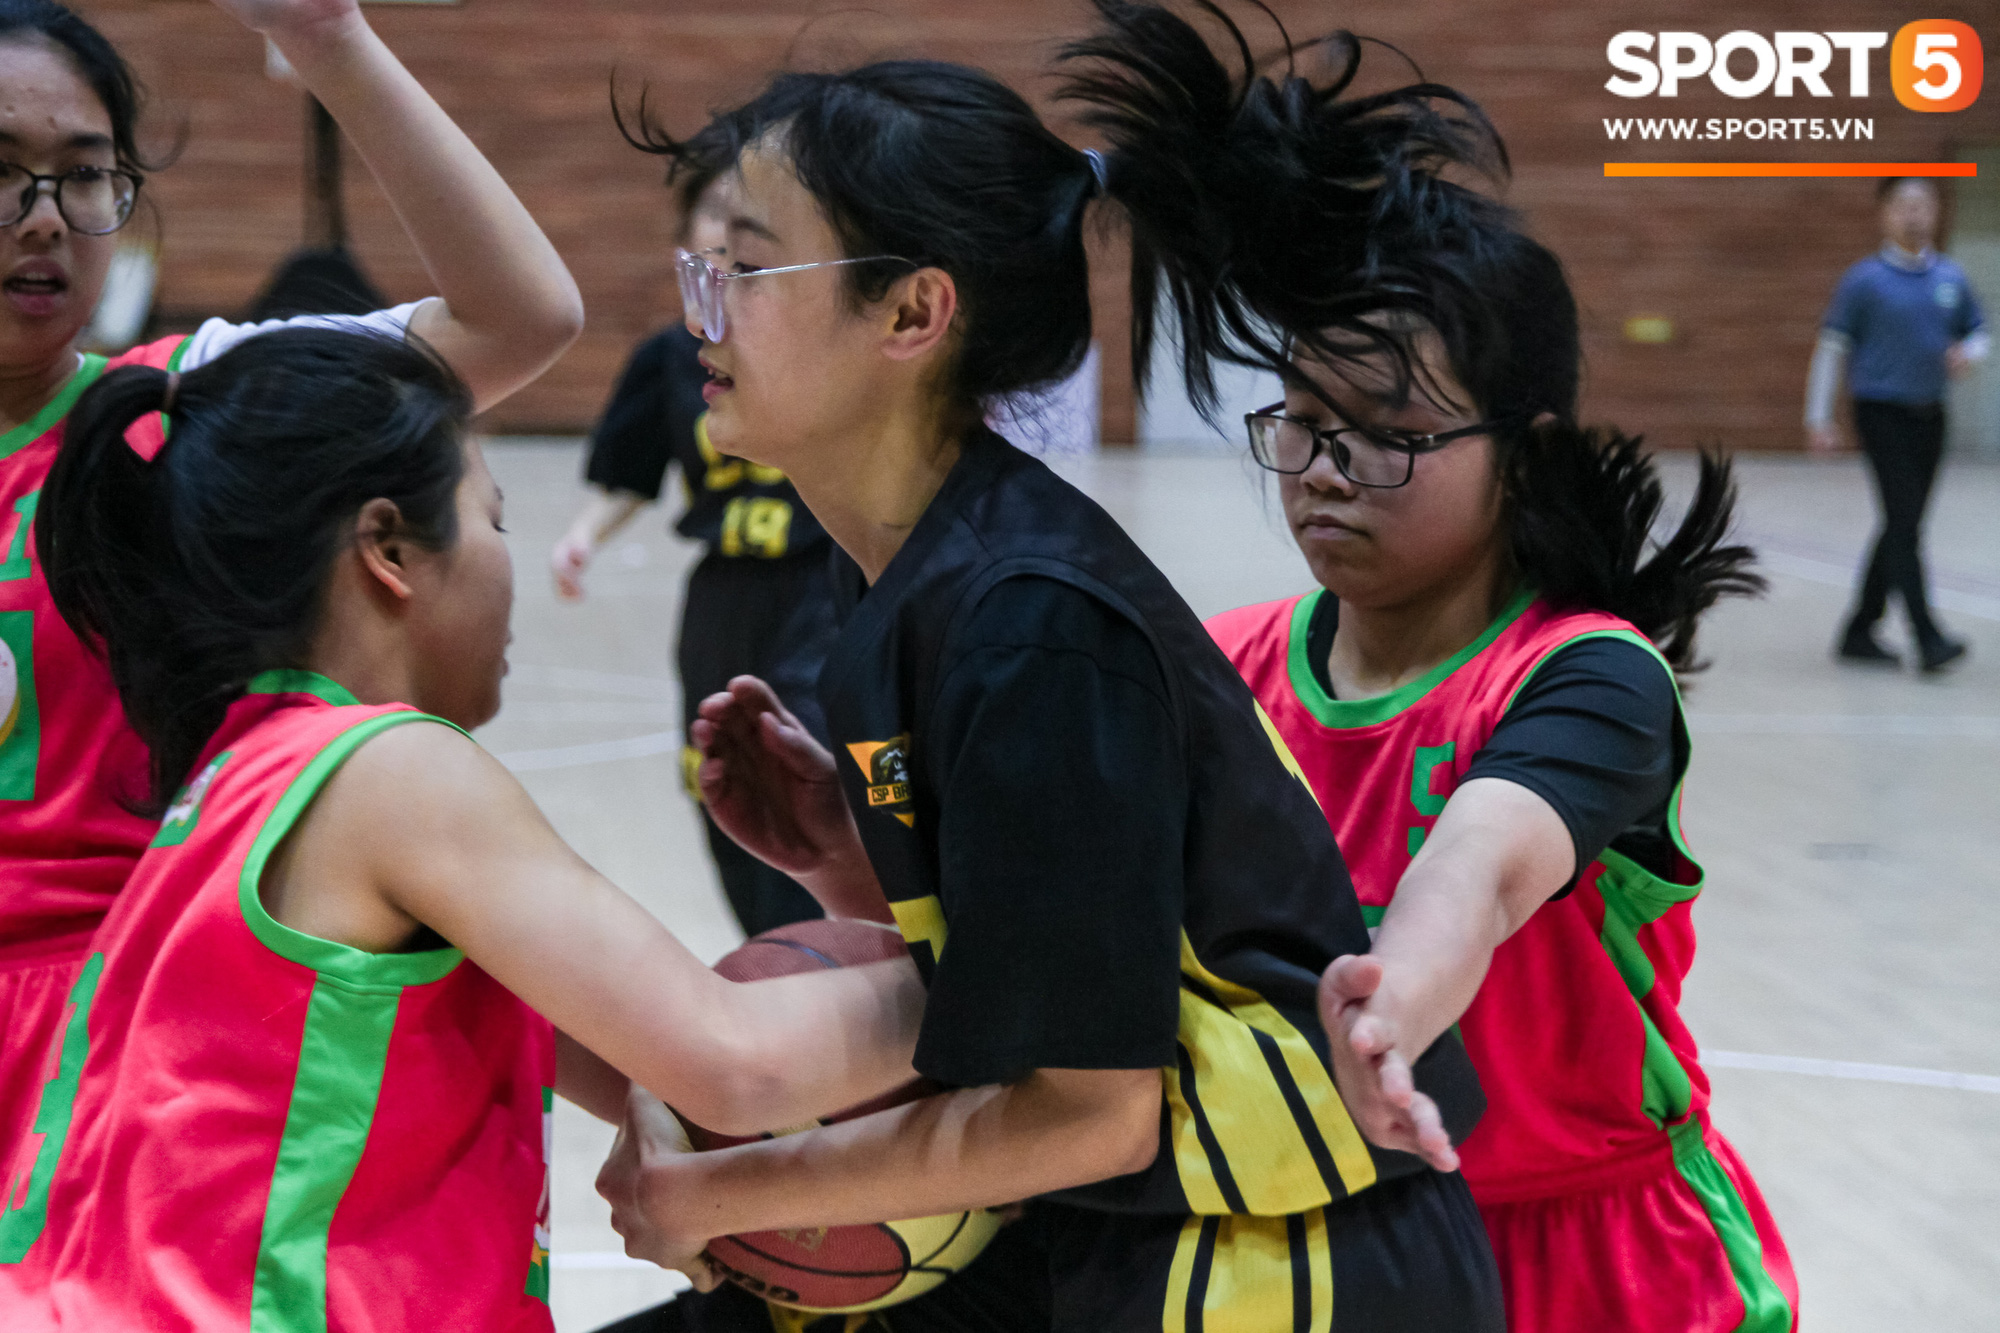 Mê mẩn vẻ đẹp của các nữ cầu thủ tại giải học sinh Hà Nội - Ảnh 11.